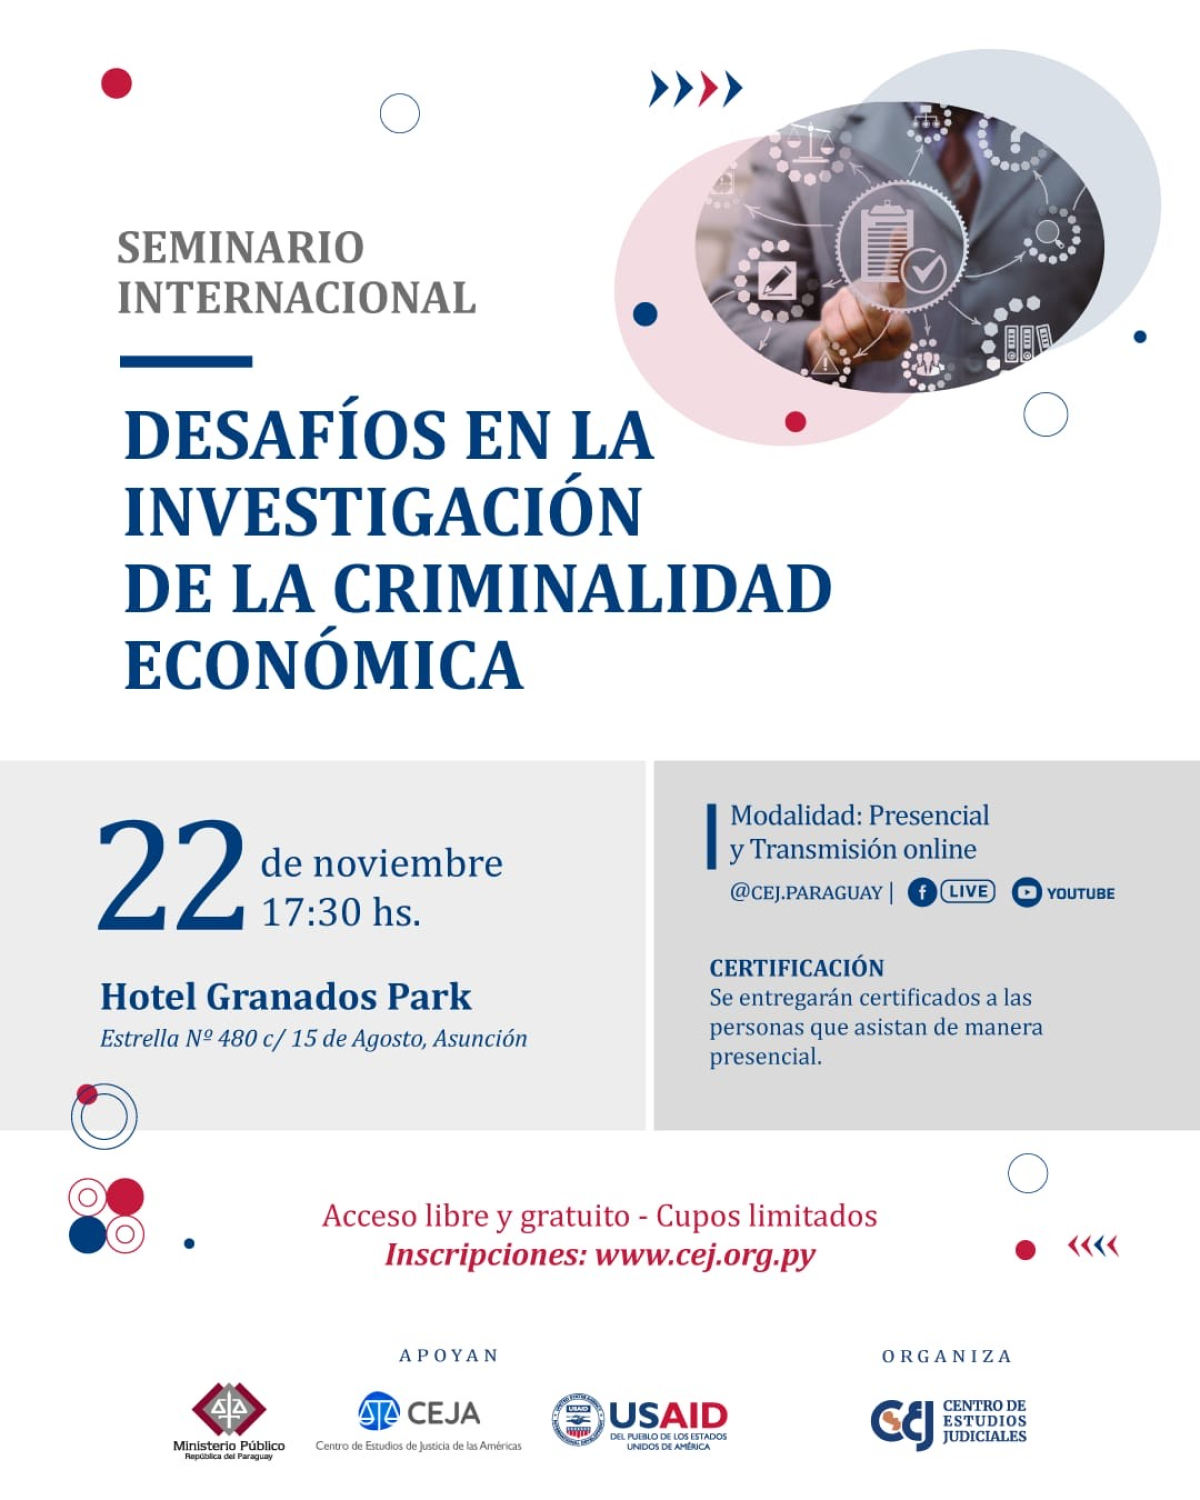 Se realizará el Seminario Internacional “Desafíos en la investigación de la criminalidad económica”.